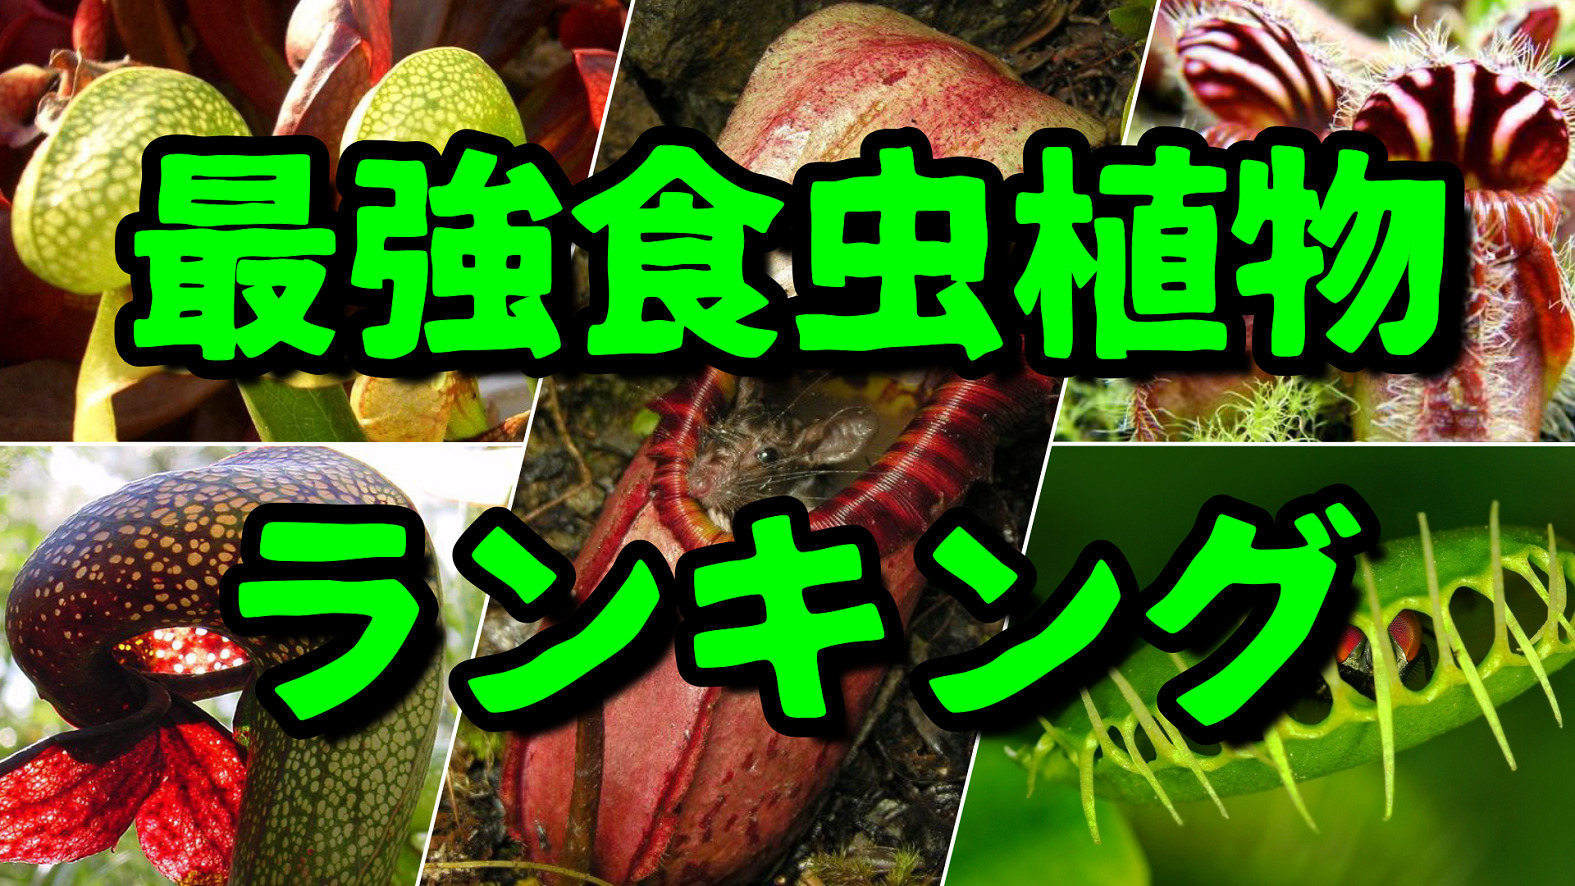 対決!!世界最強食虫植物ランキング